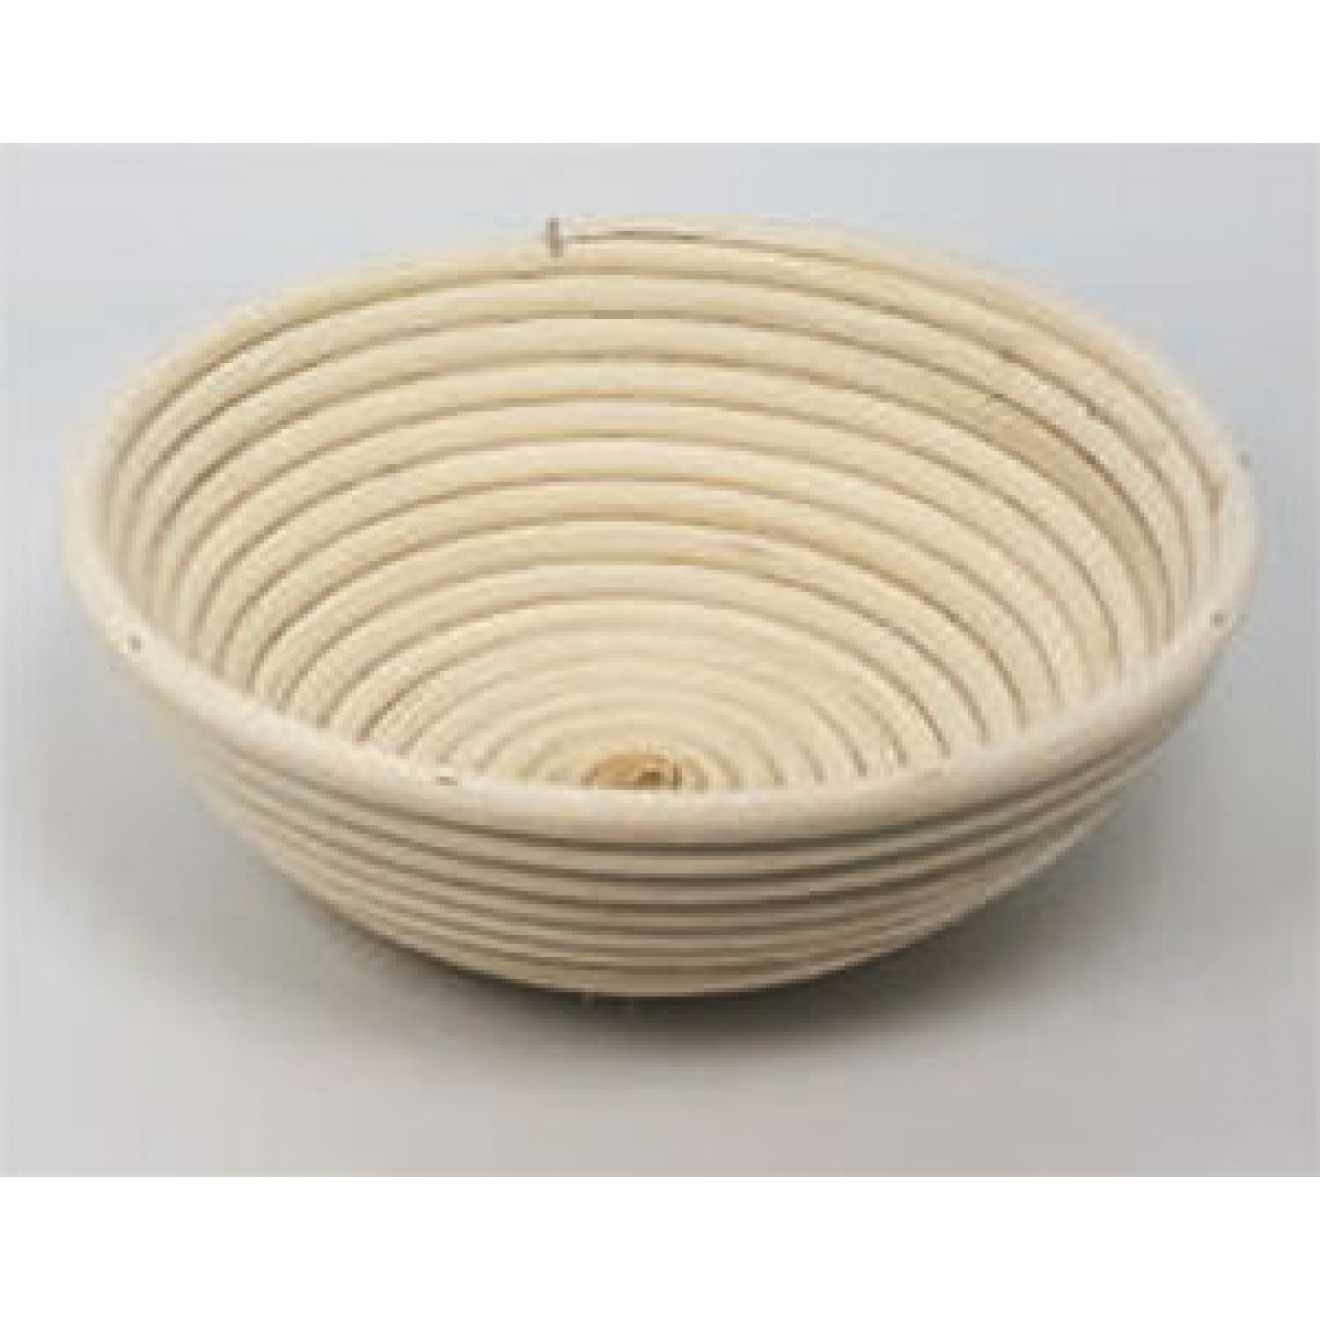 Banneton Bread Dough Proofing Basket, Round 8.66Inch (22cm) for 2.2lb (1kg) Dough